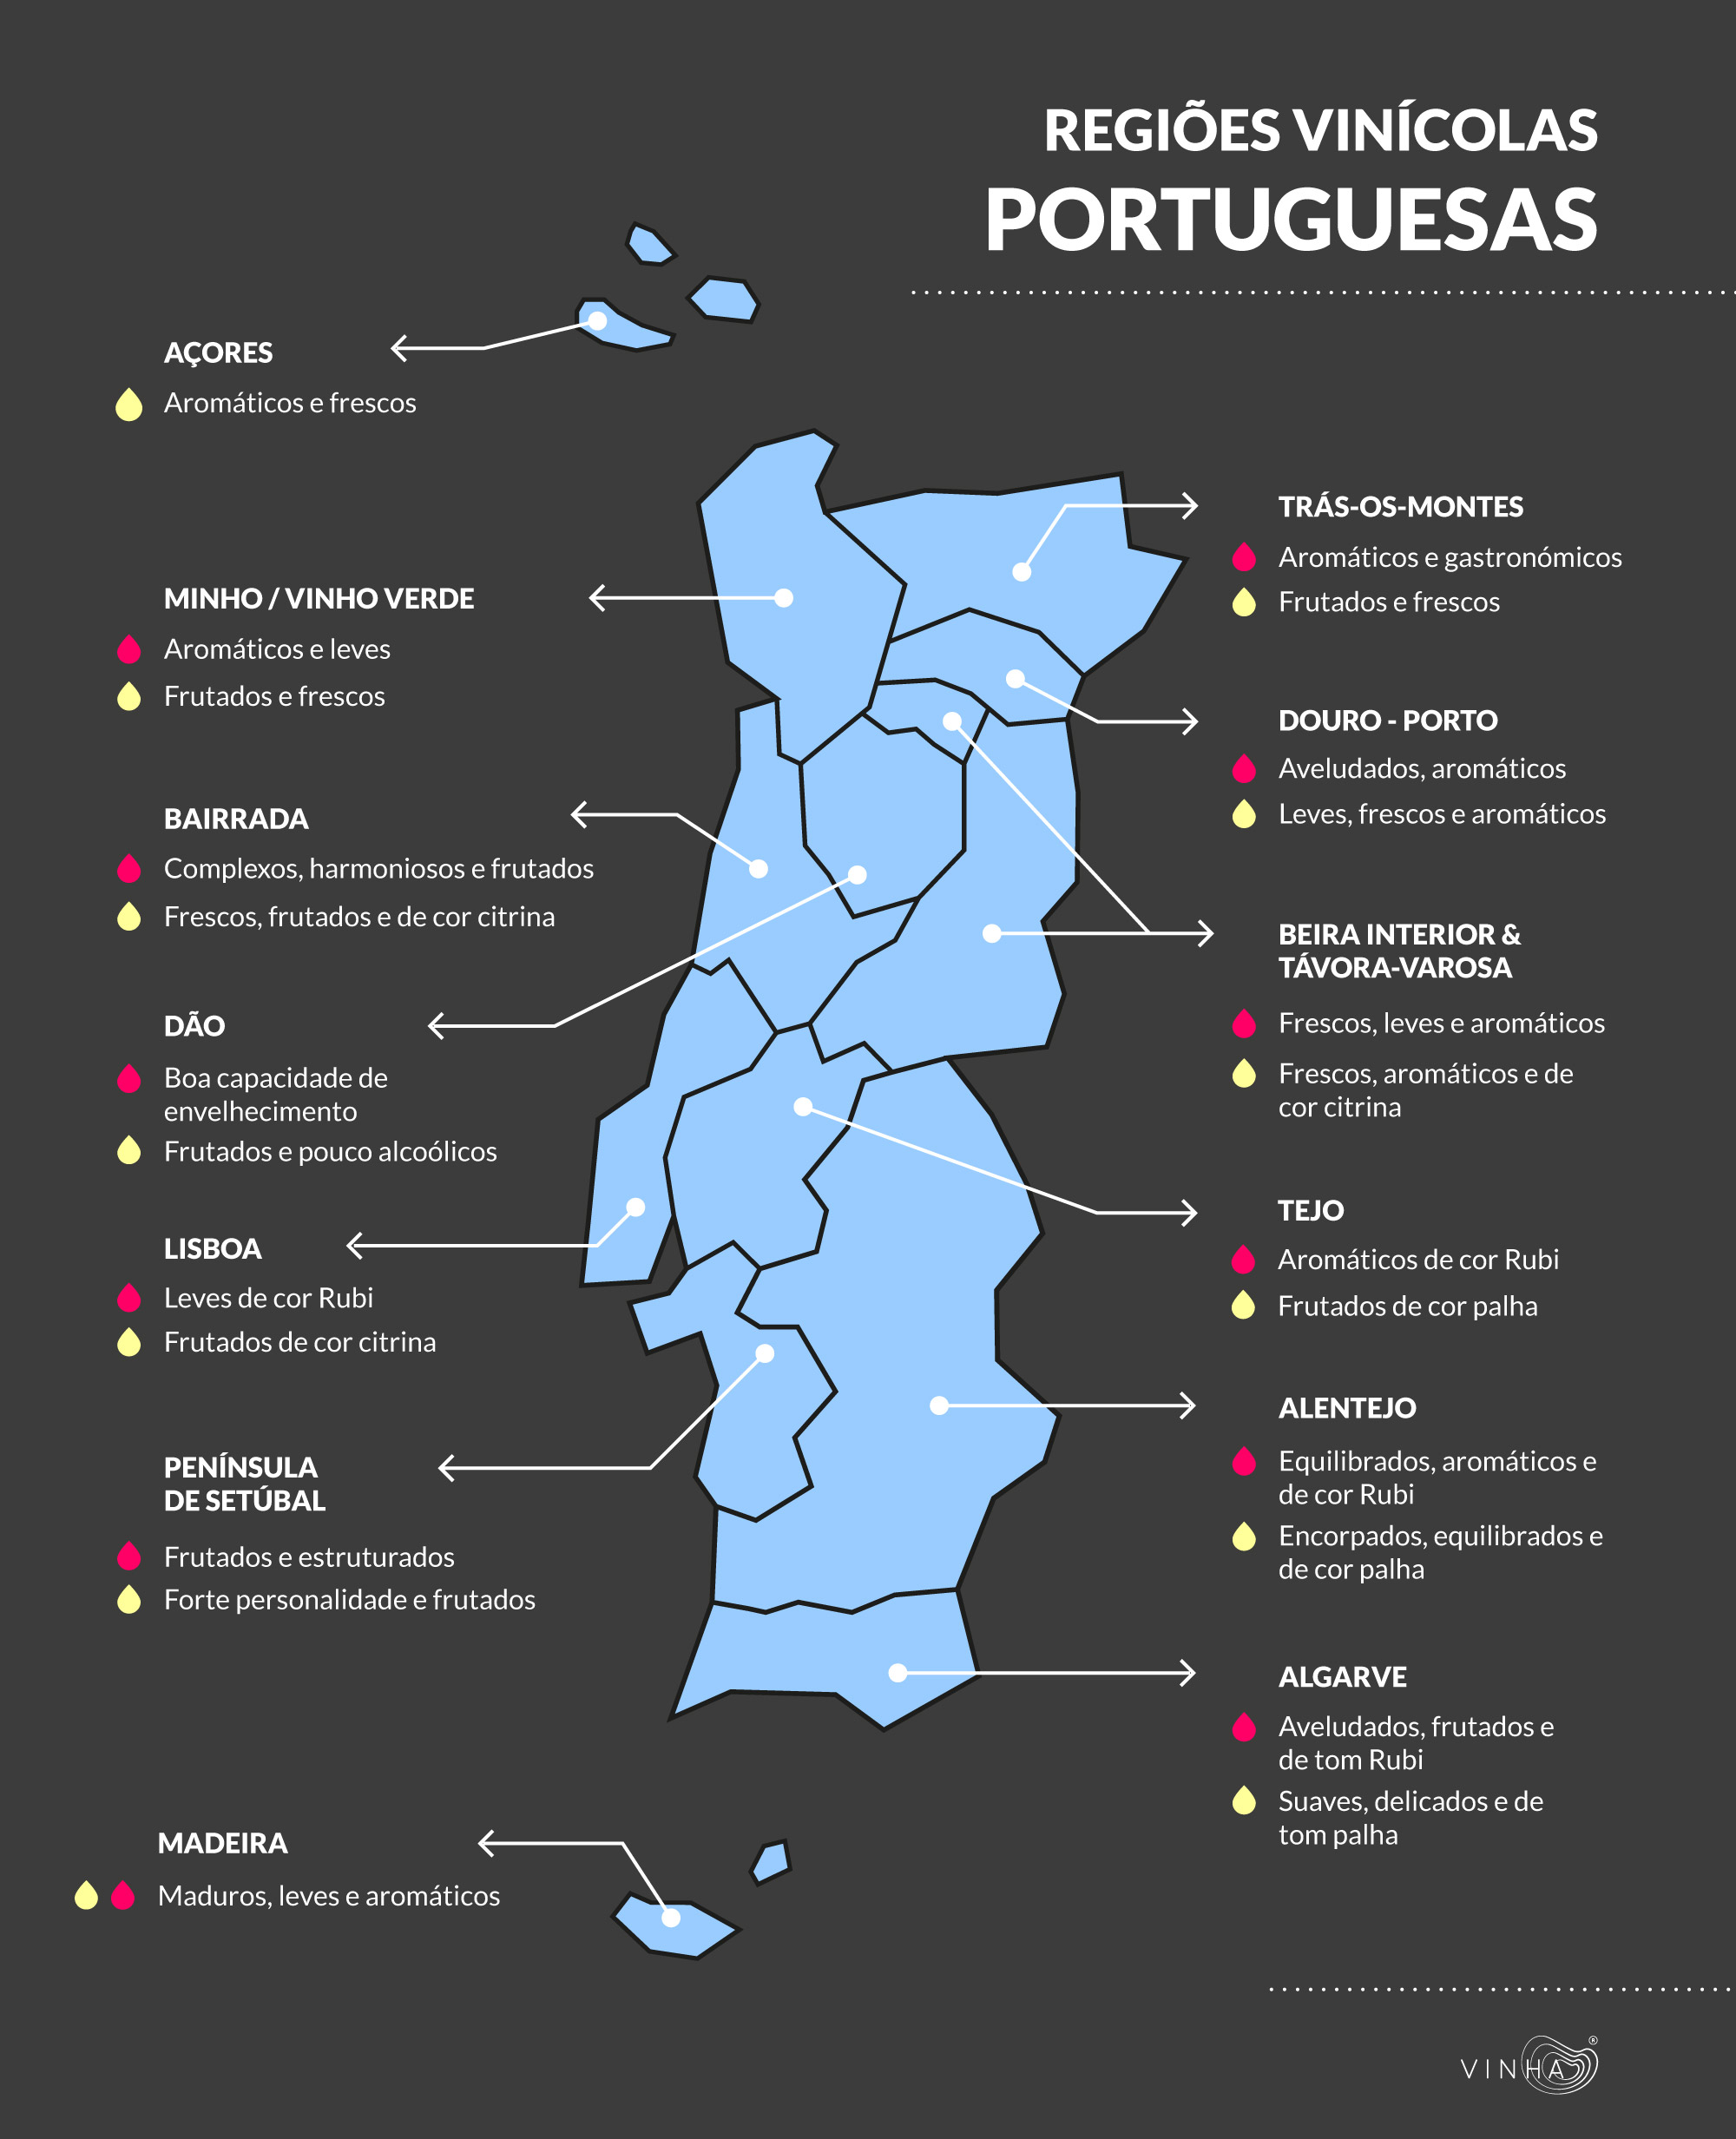 Wine regions in mainland Portugal. Regiões vitivinícolas em Portugal